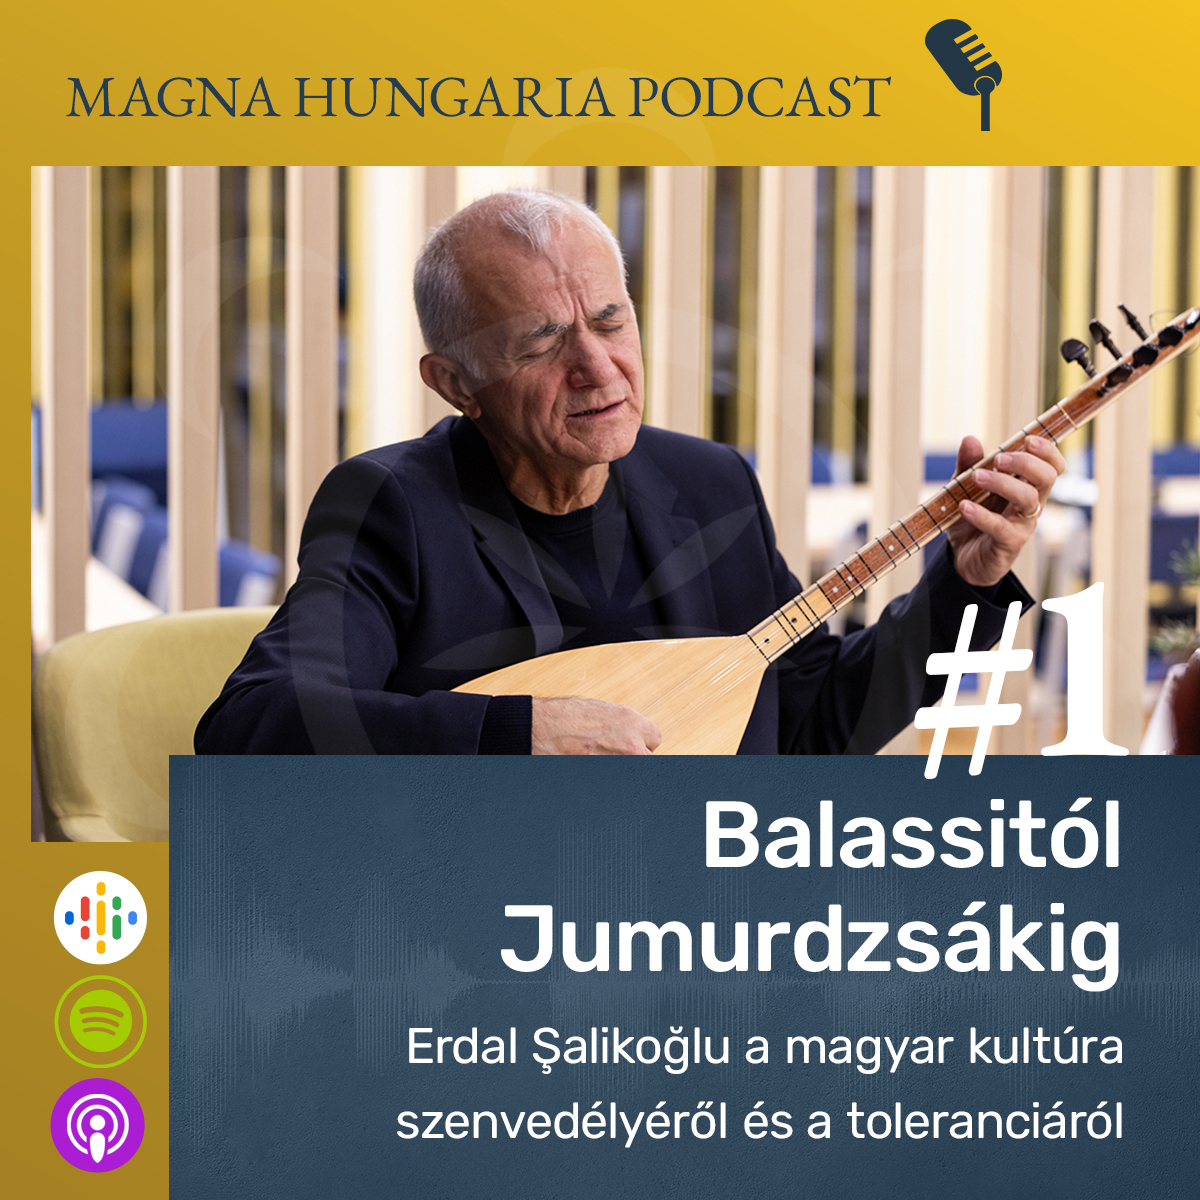 Podcastot indít az MCC Magyar Összetartozás Intézete